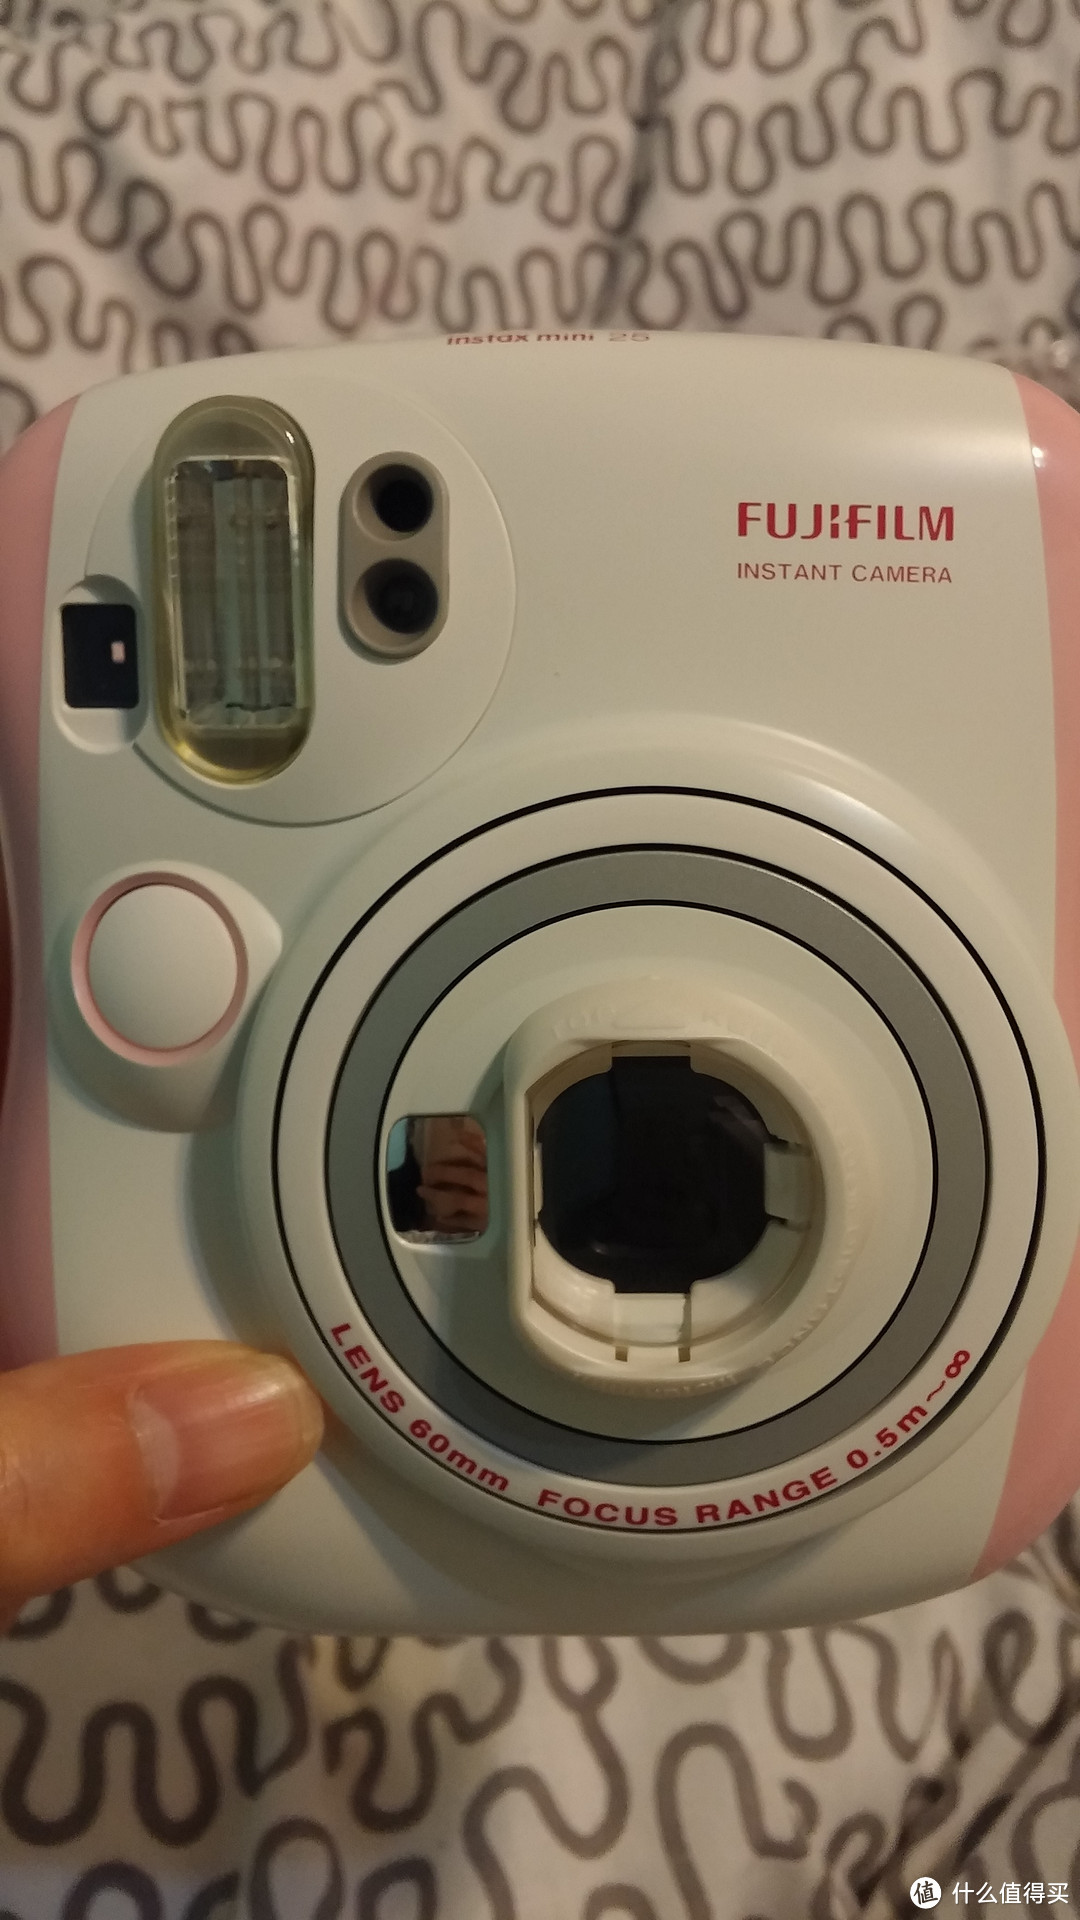 晒一晒 富士 FUJIFILM 拍立得相机 Instax mini25